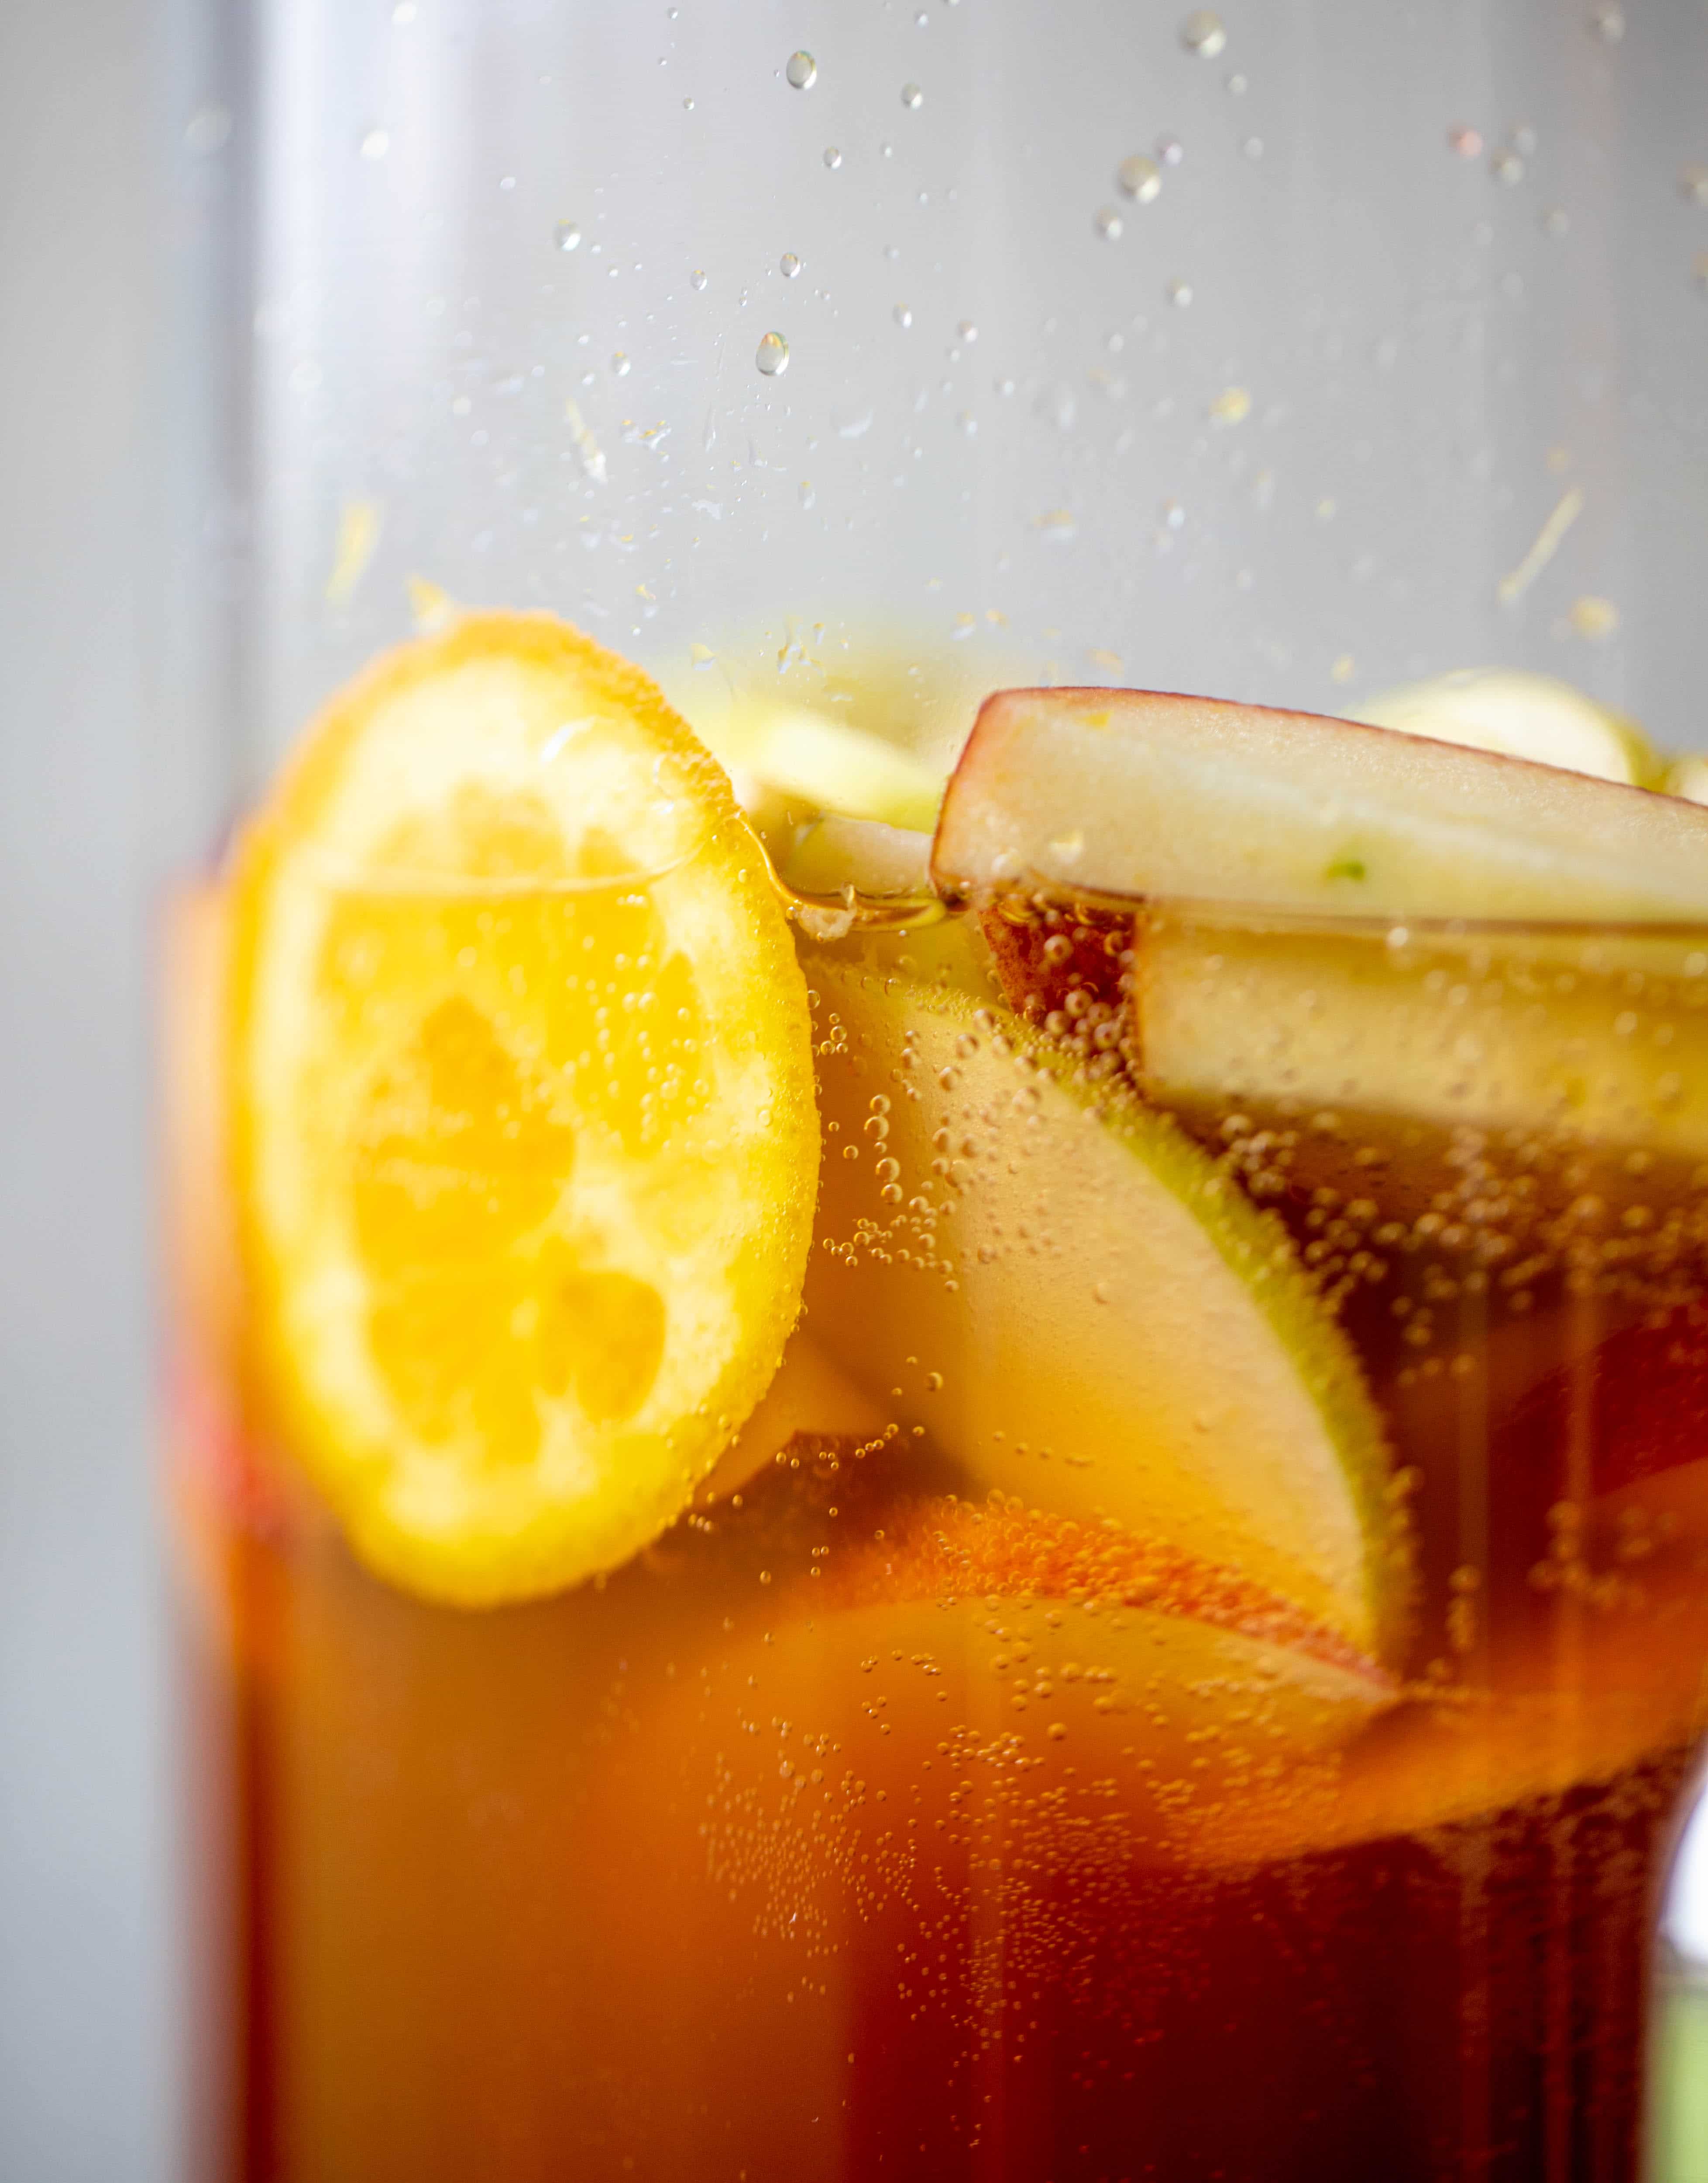 这个苹果酒潘趣酒配方有很多秋天的味道!苹果酒，aperol，石榴苏打水和普罗赛克结合在一起，创造出一款起泡的饮料!